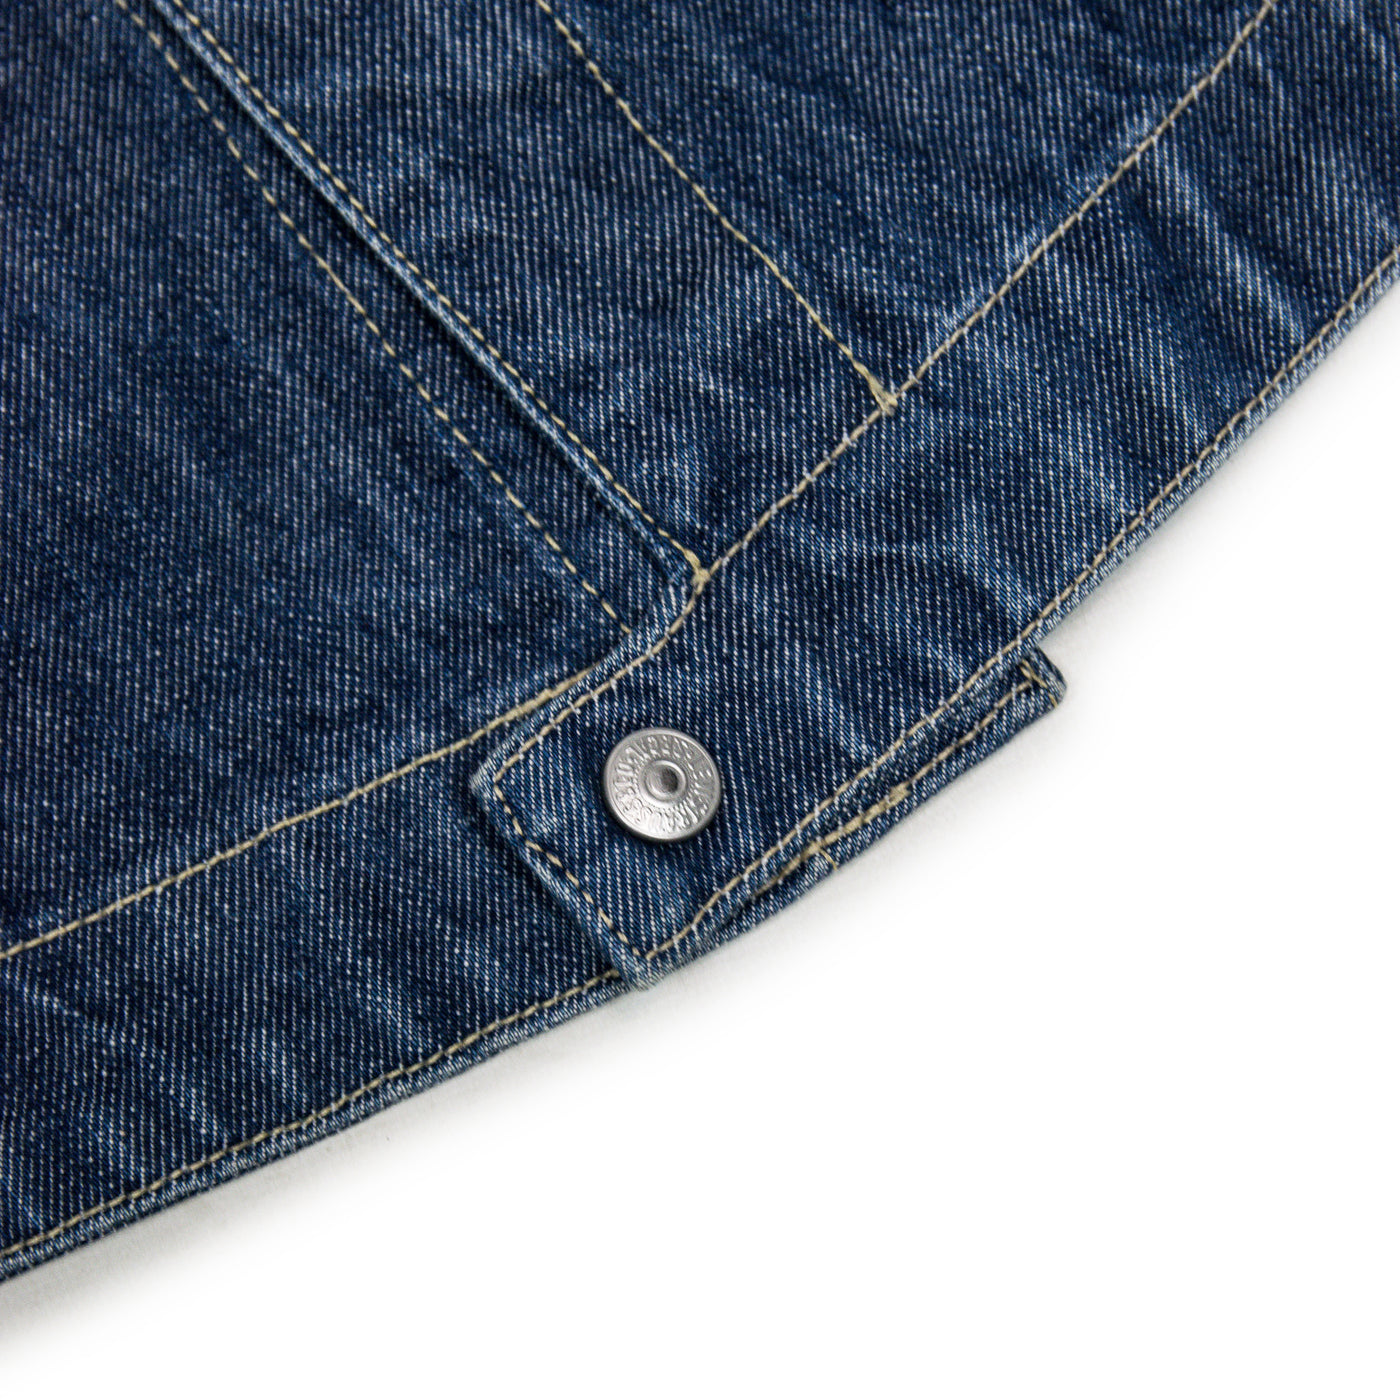 Vintage 90s Levi's Red Tab Engineered Jeans Blue Denim Jacket L FRONT HEM DETAIL